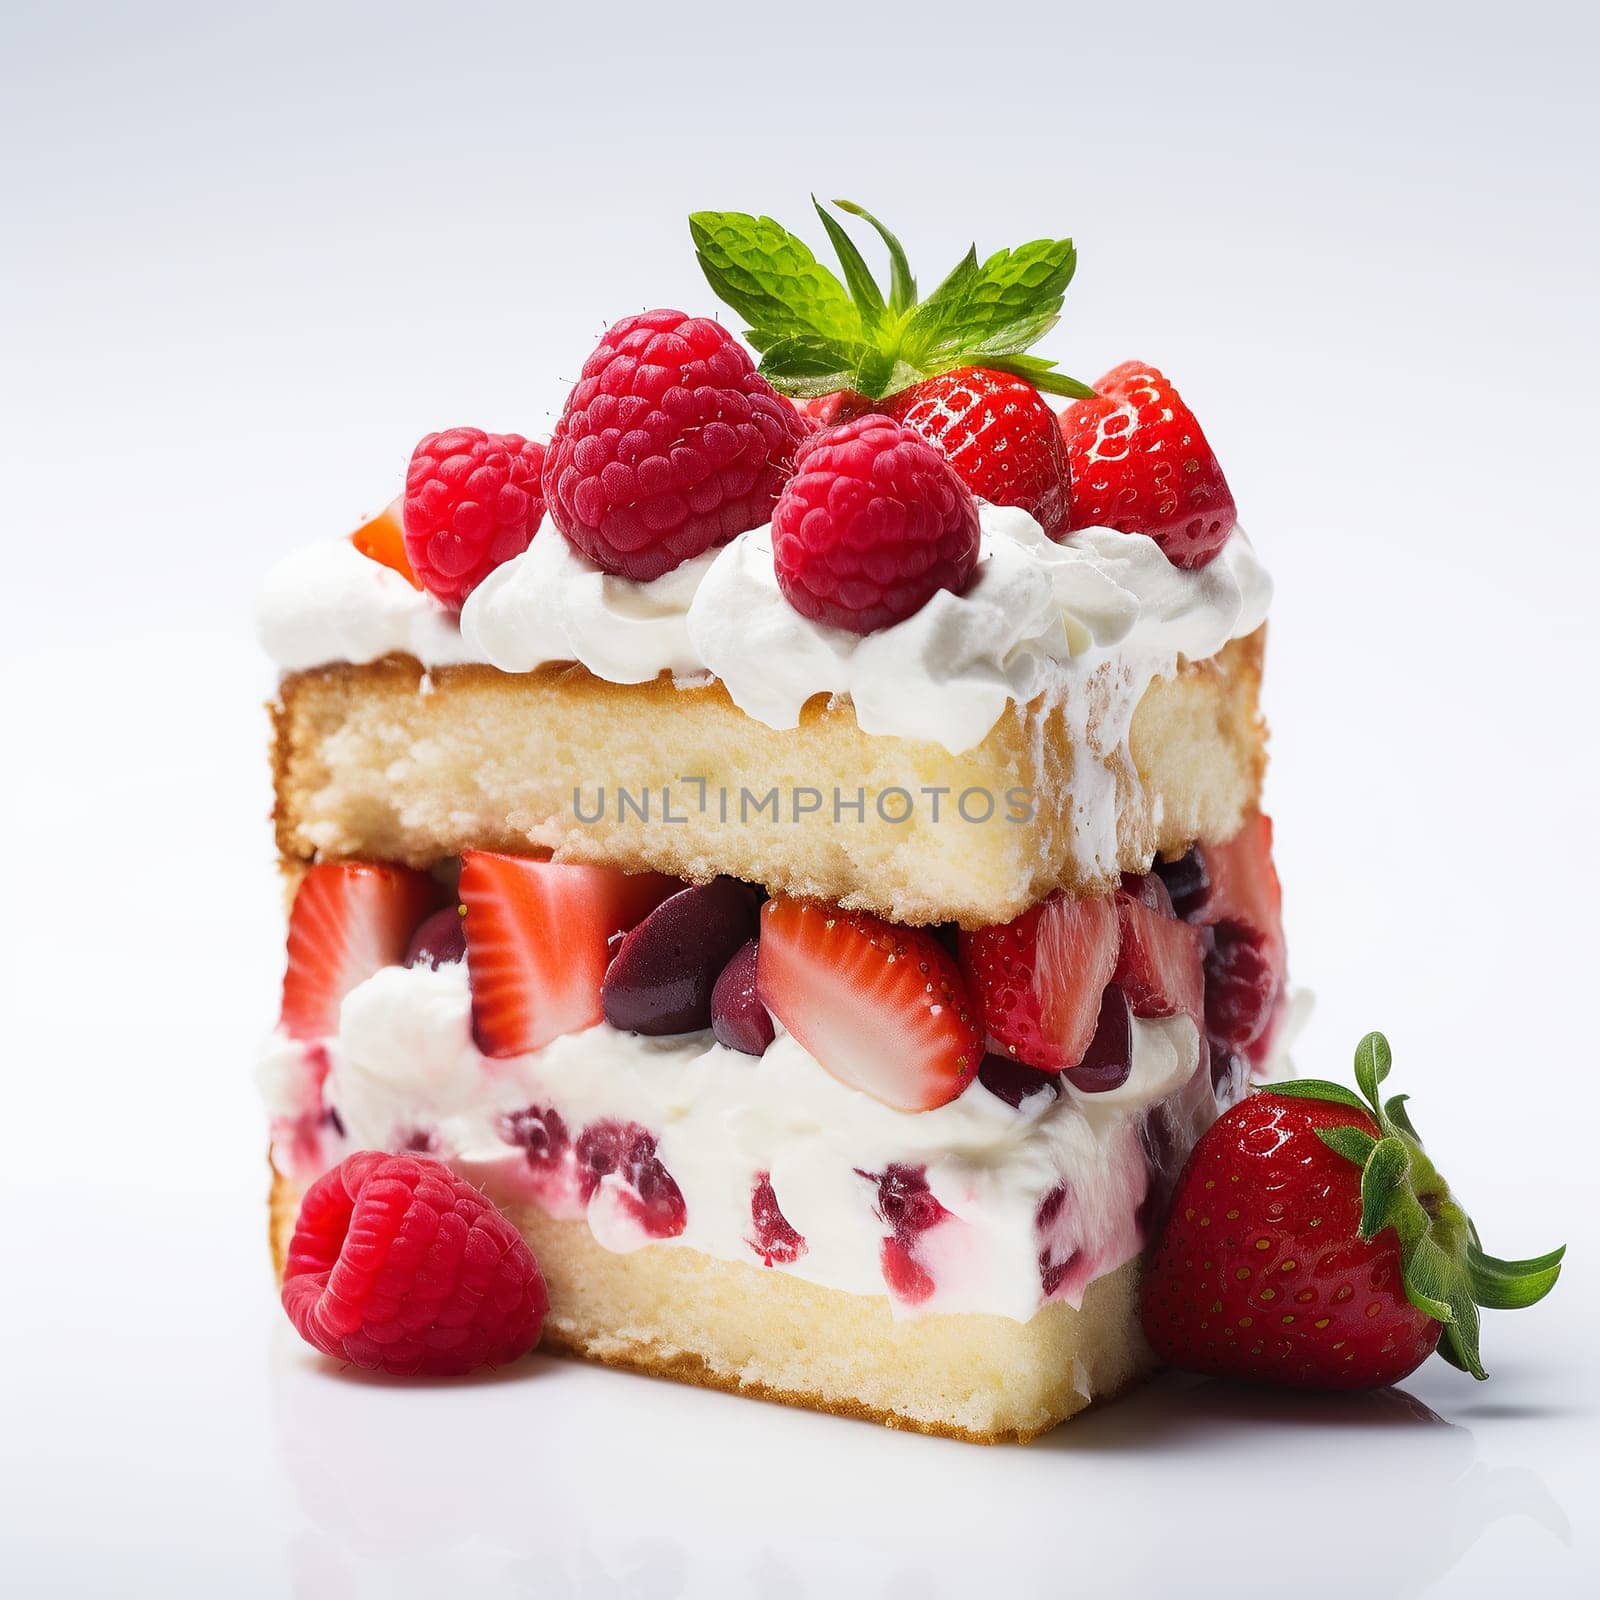 Tasty Fruit Pie Slice on White Background. by Rina_Dozornaya